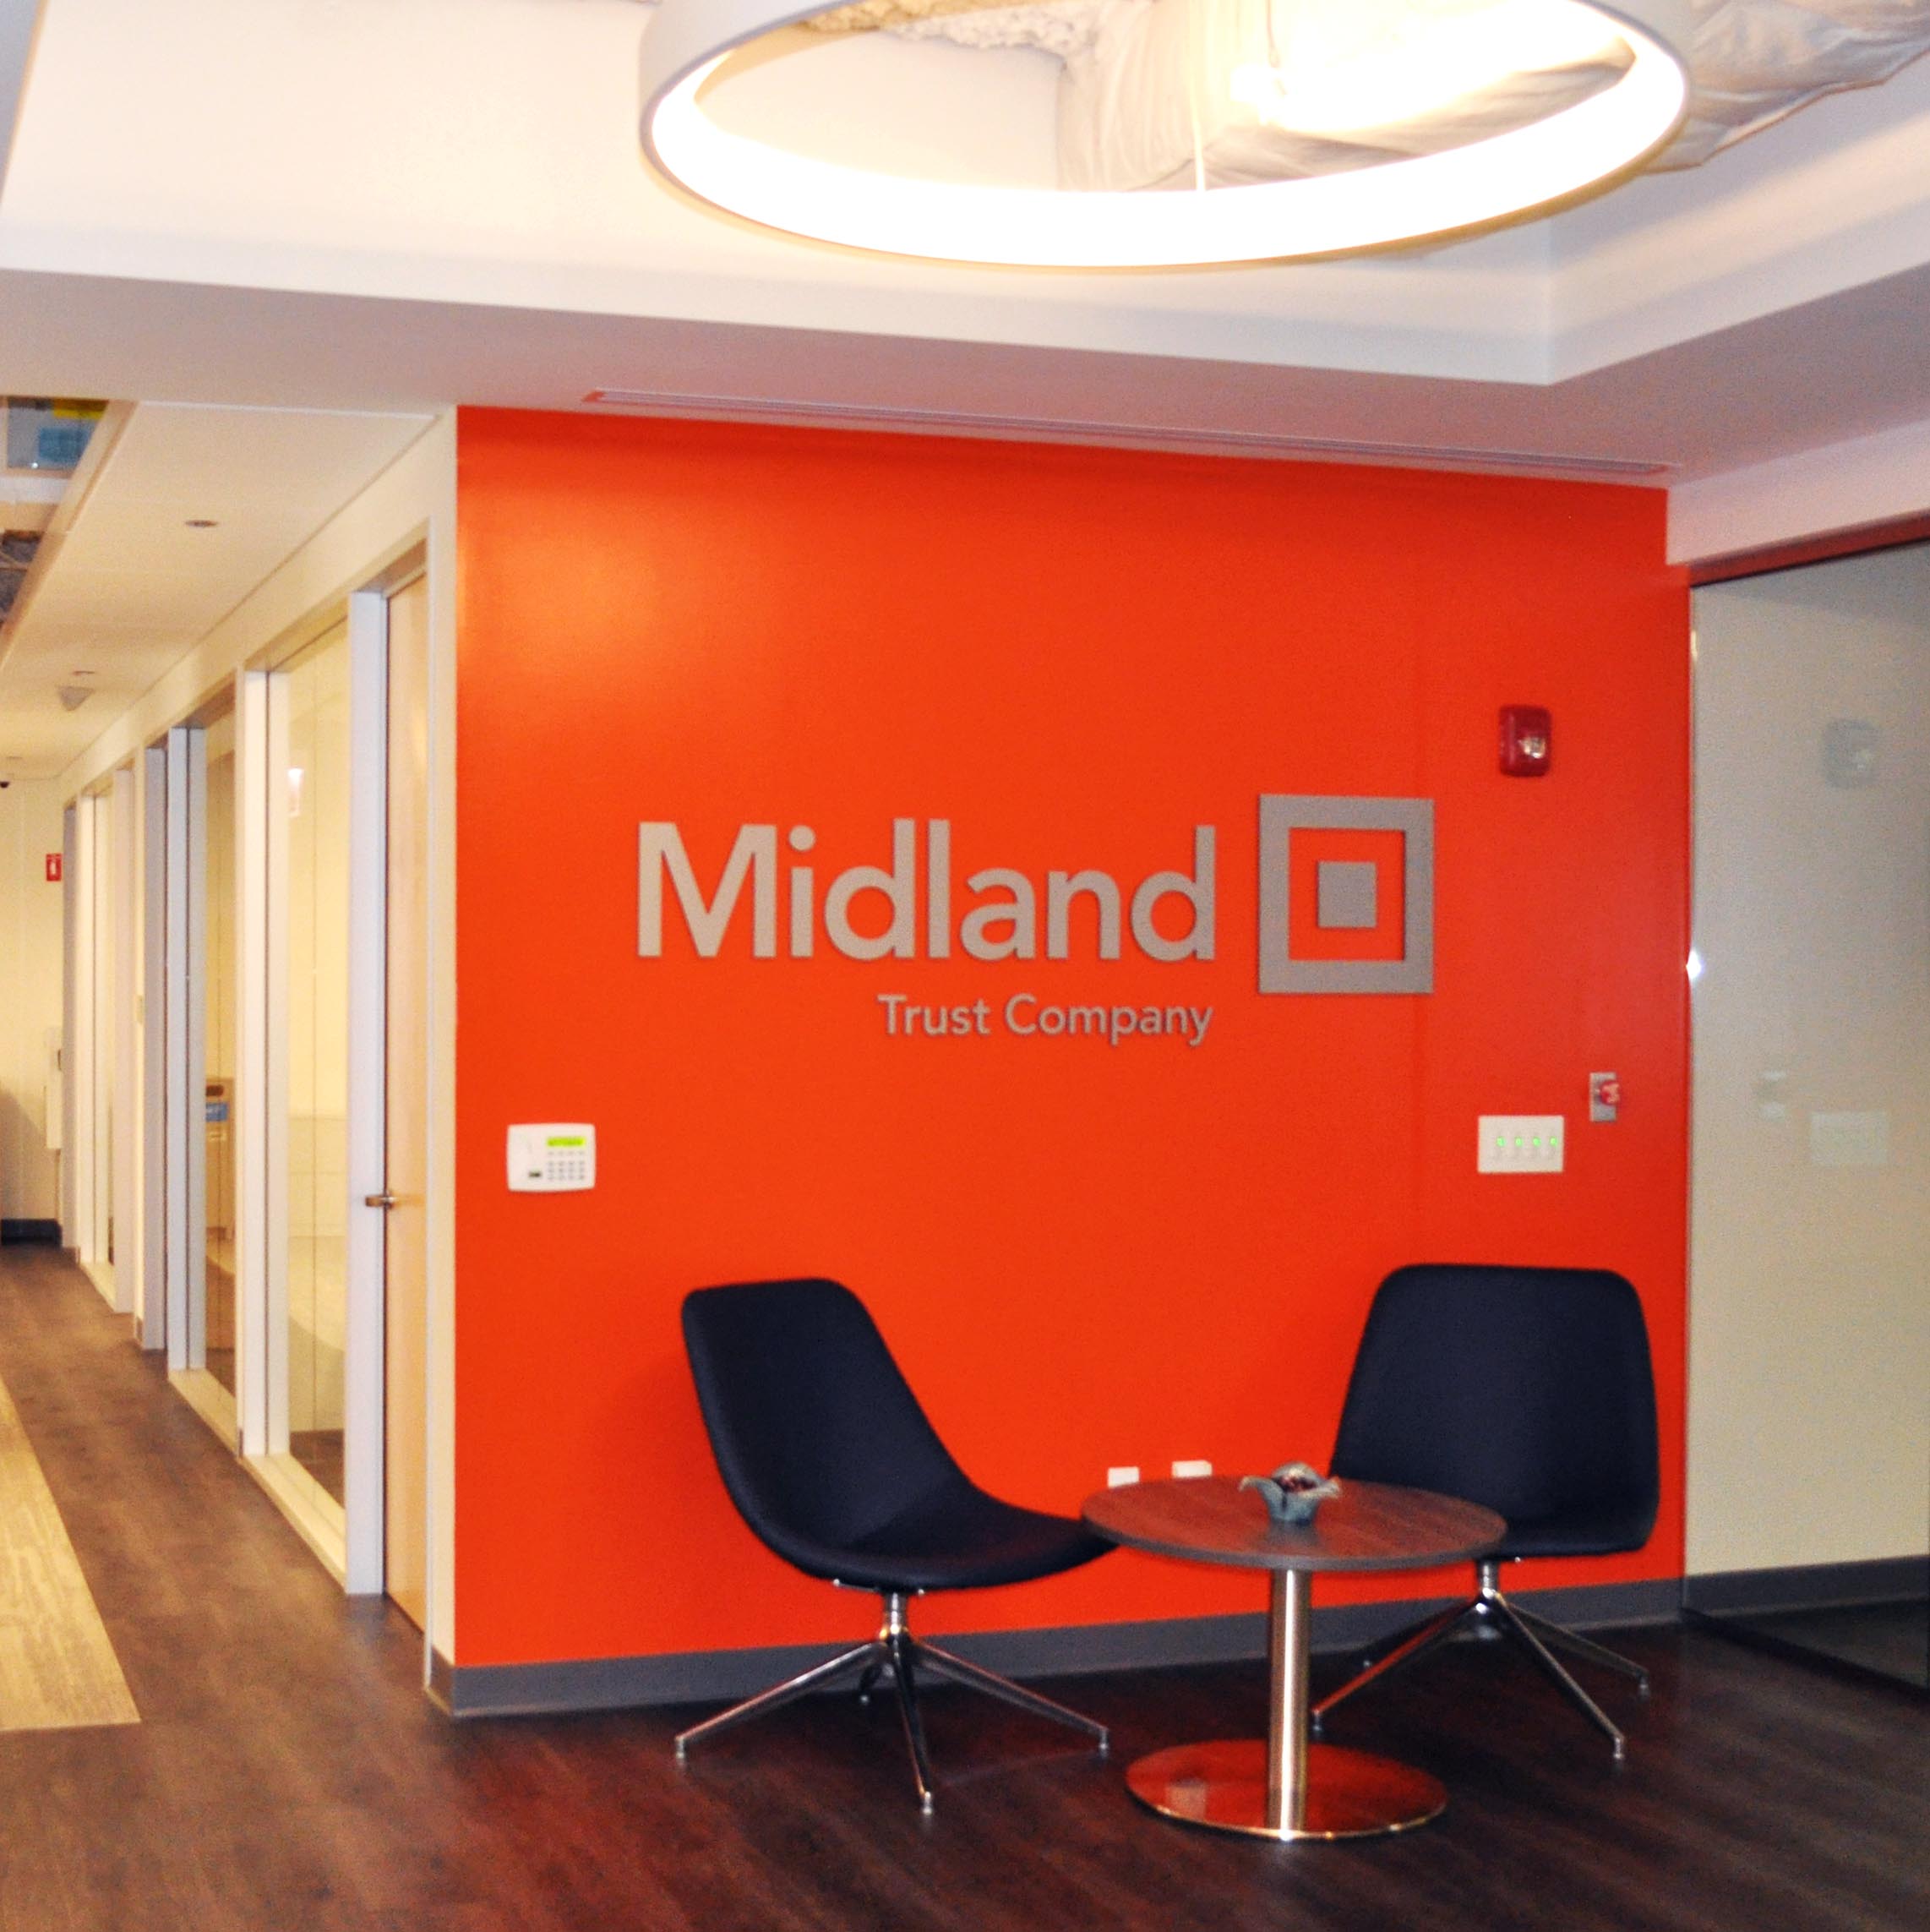 Midland trust company office lobby